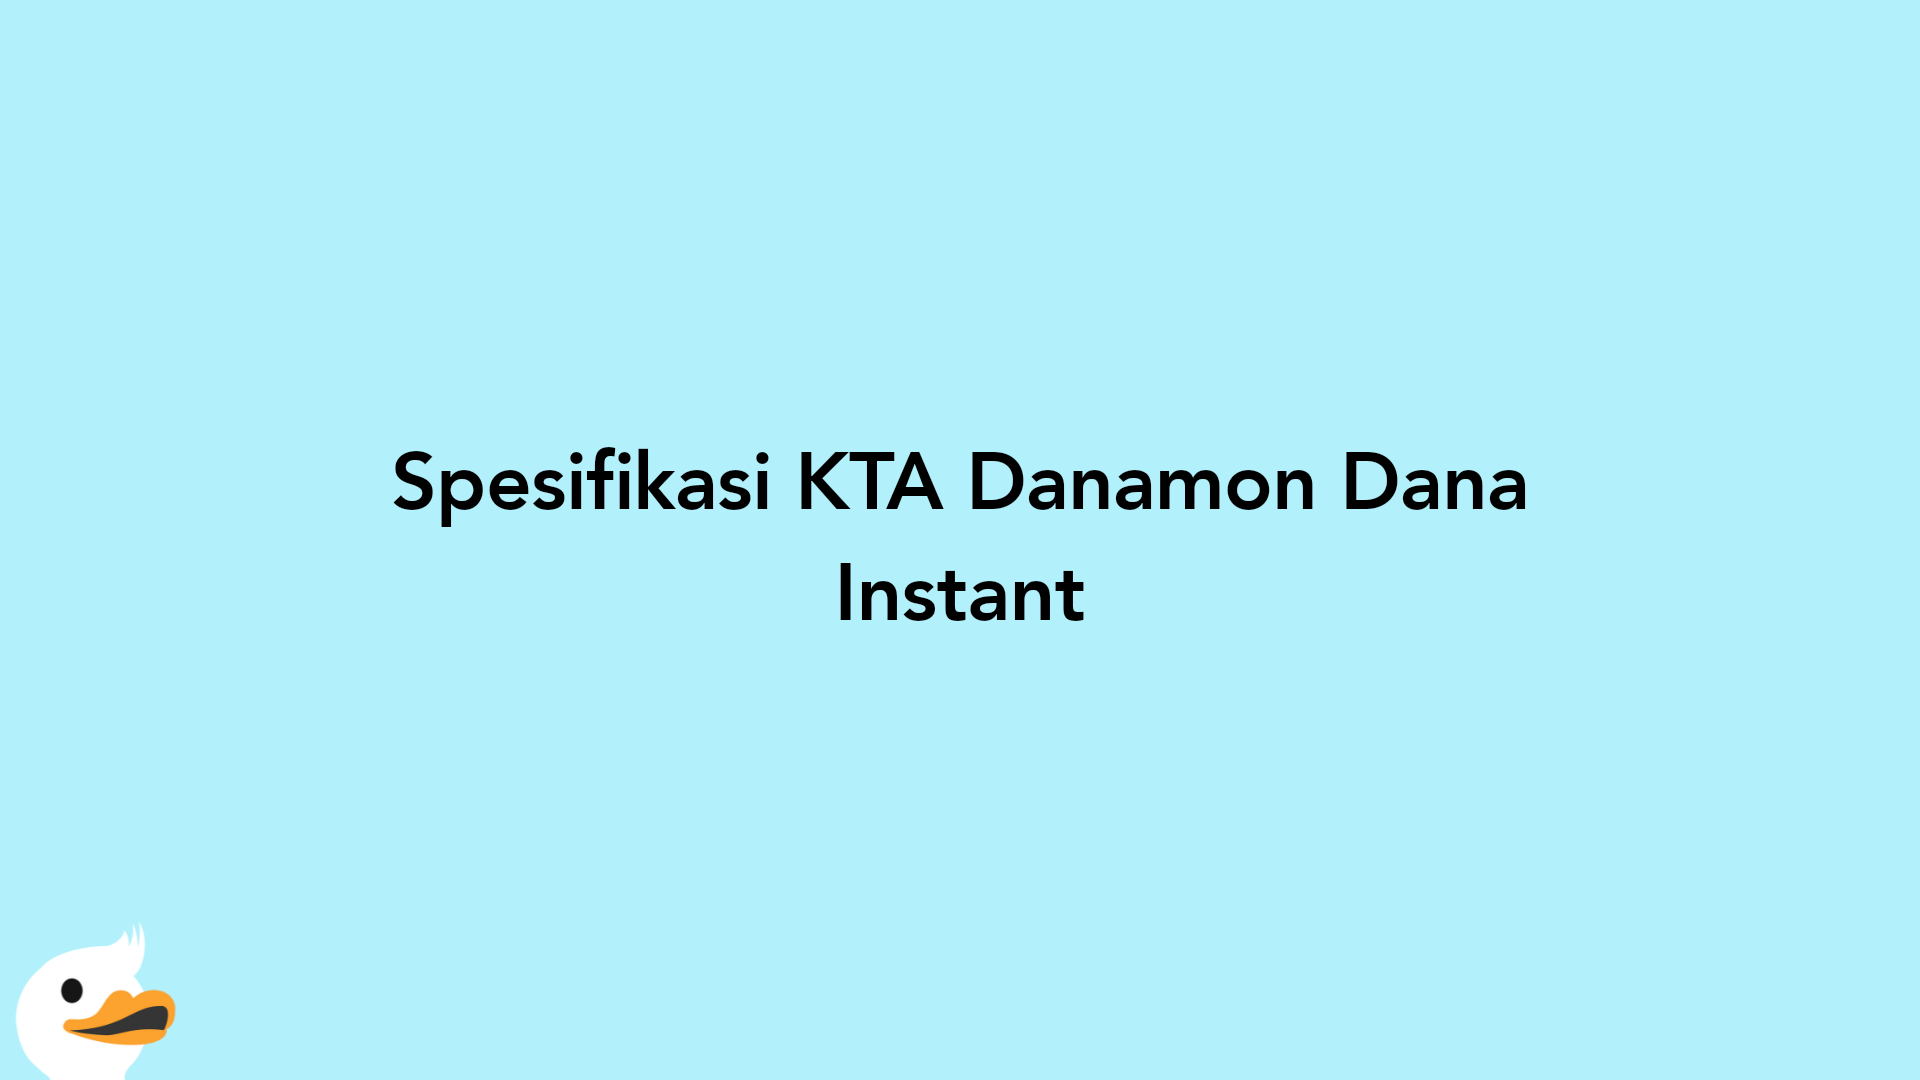 Spesifikasi KTA Danamon Dana Instant